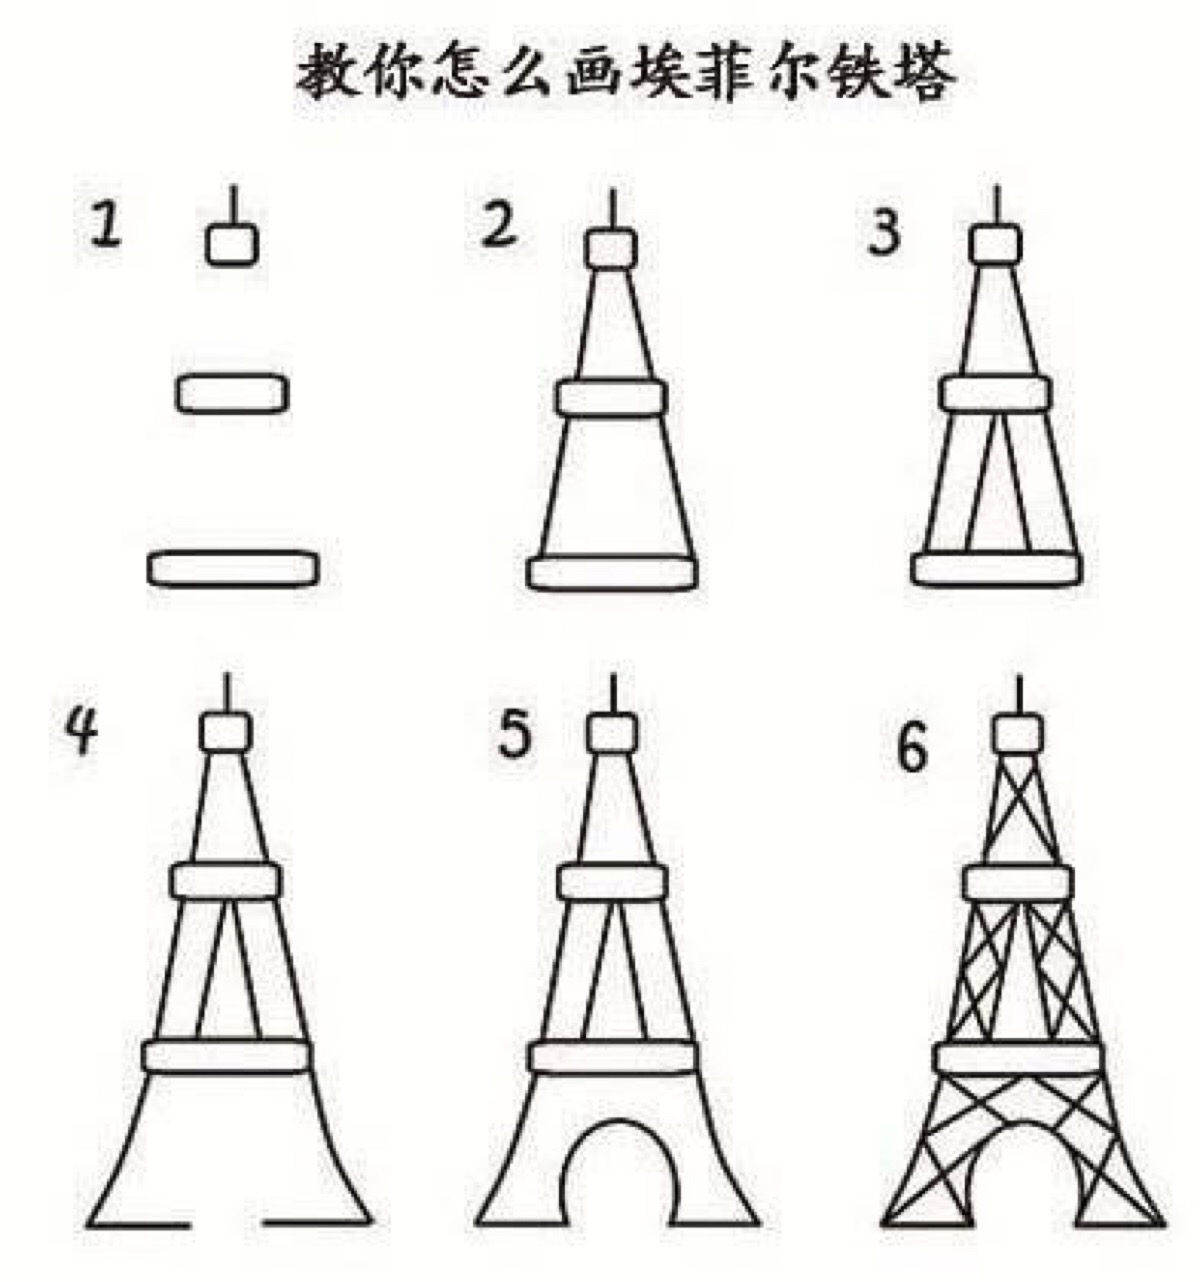 巴黎铁塔简笔画梦幻图片